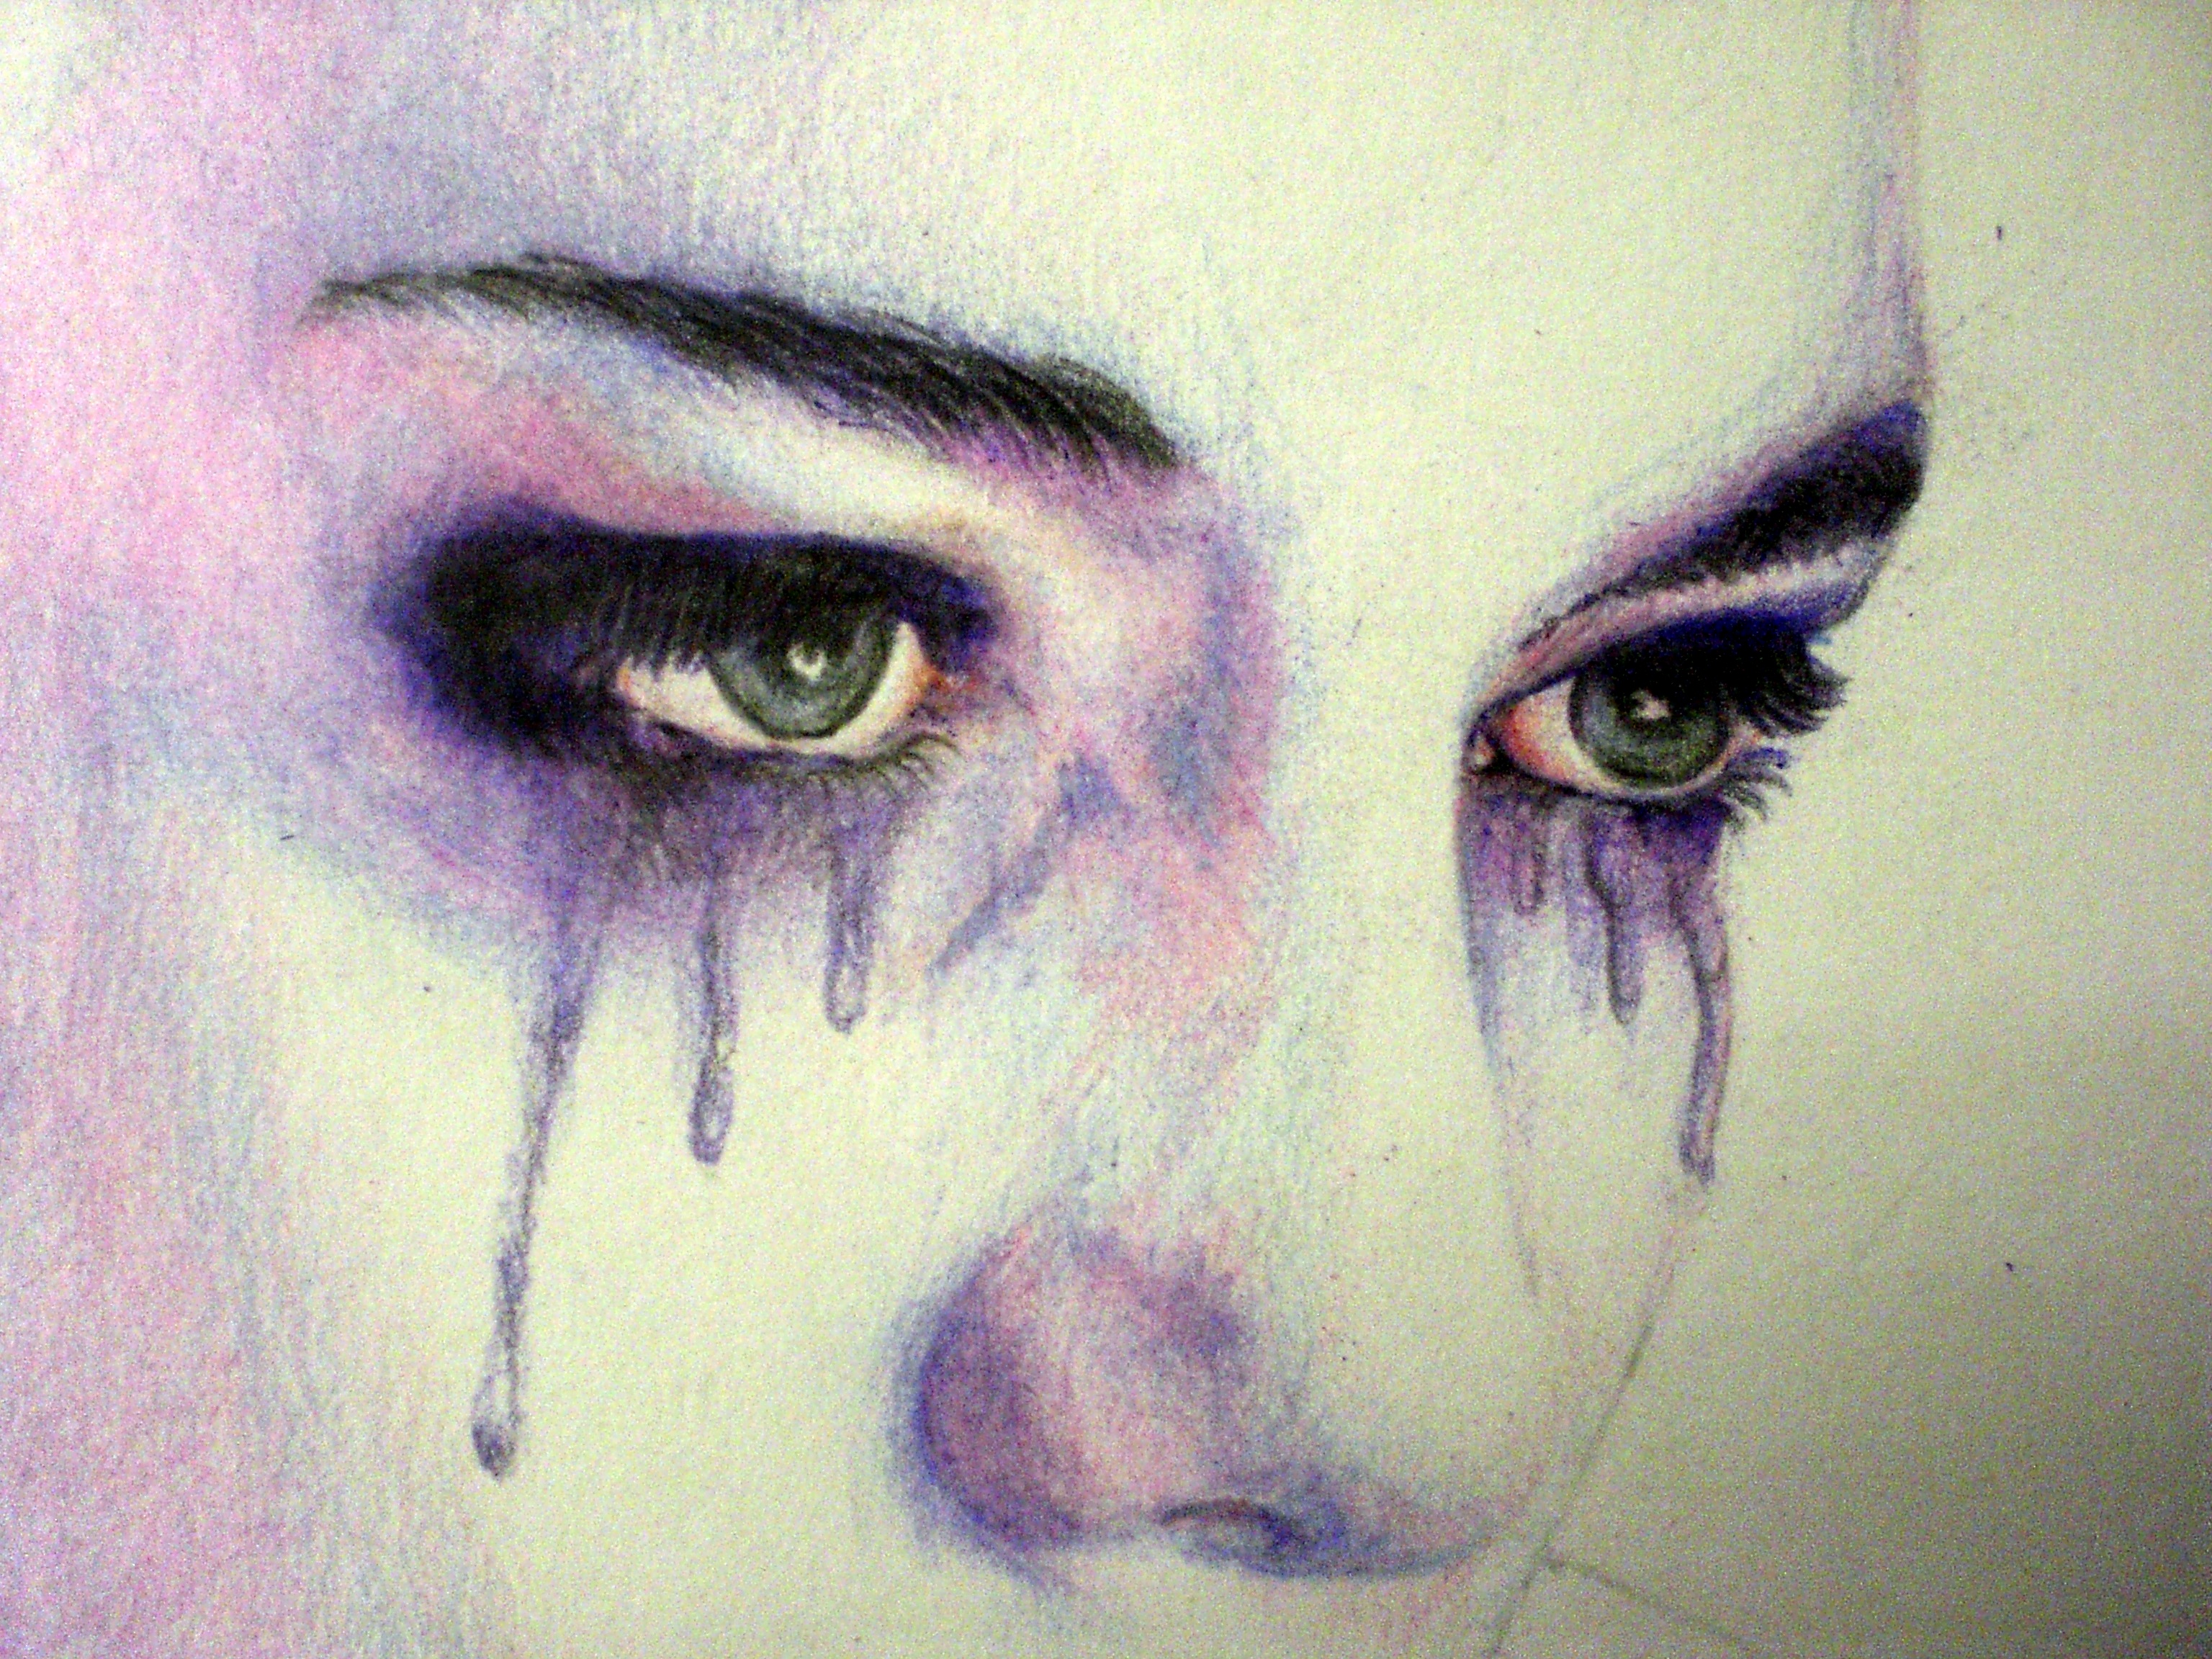 Заплаканное нарисованное лицо